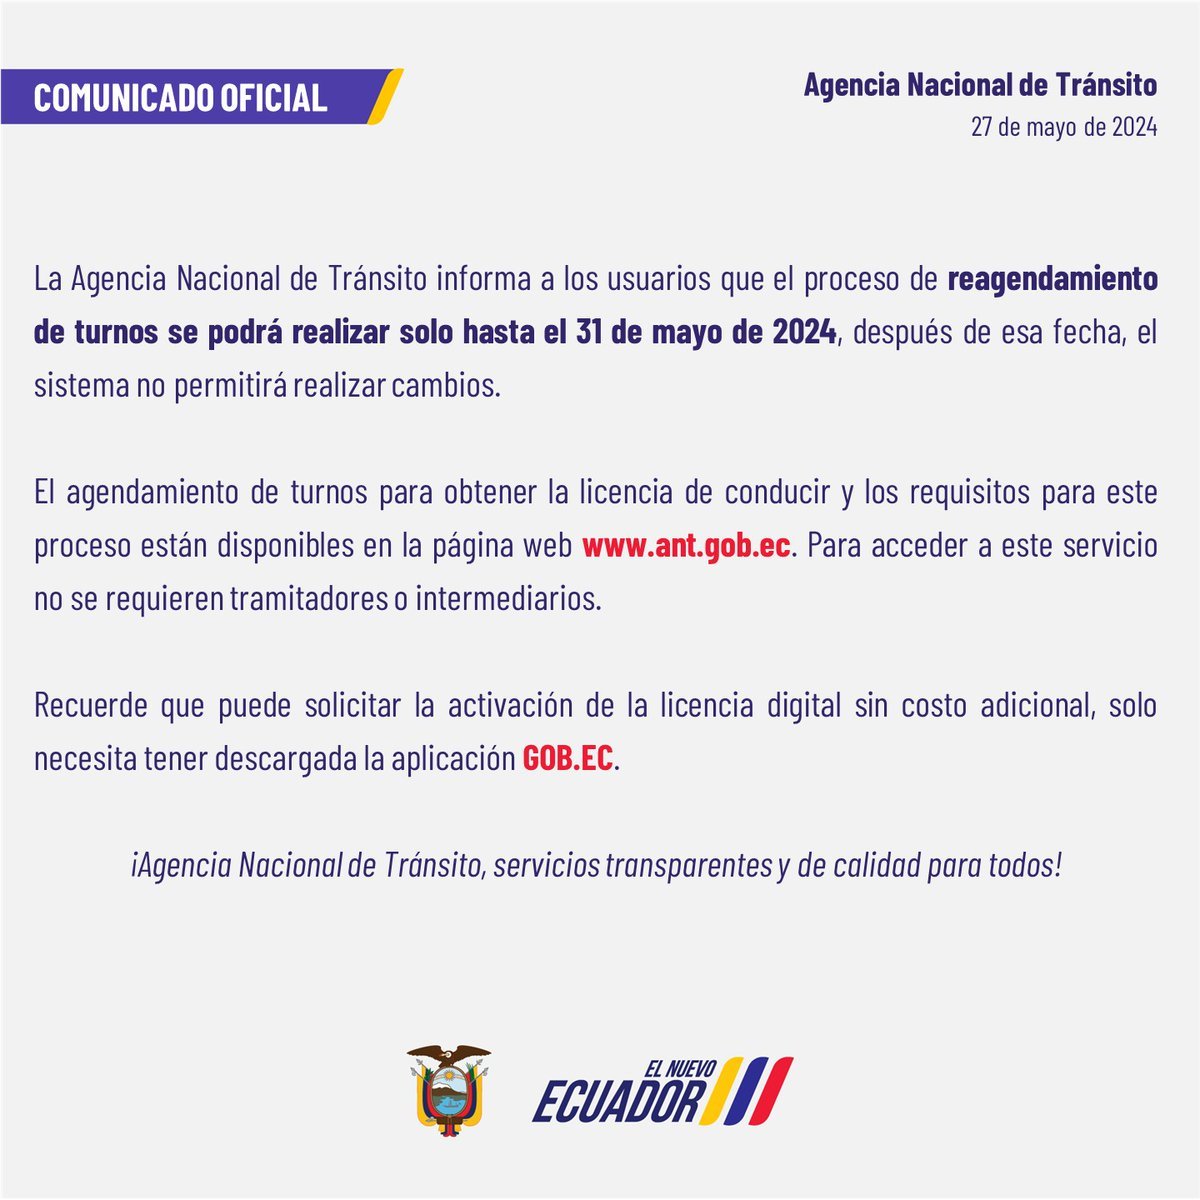 #ATENCION 🚨 La Agencia Nacional de Tránsito comunica que el proceso de reprogramación de citas estará disponible hasta el 31 de mayo de 2024, después de esa fecha el sistema no aceptará modificaciones. #Ecuador #Noticias #Urgente #Ahora